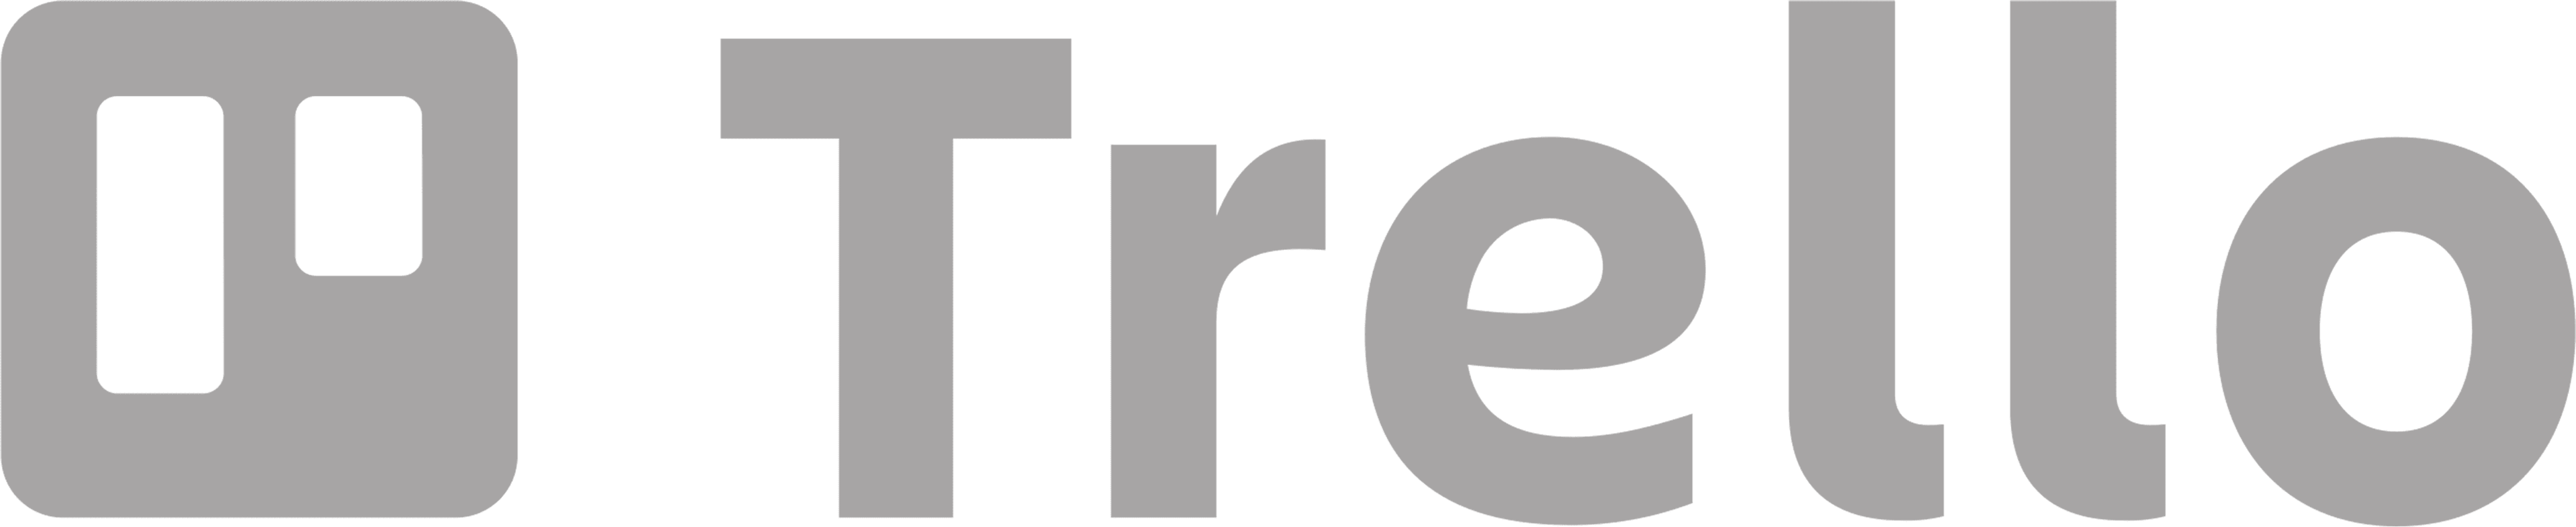 Trello-logo